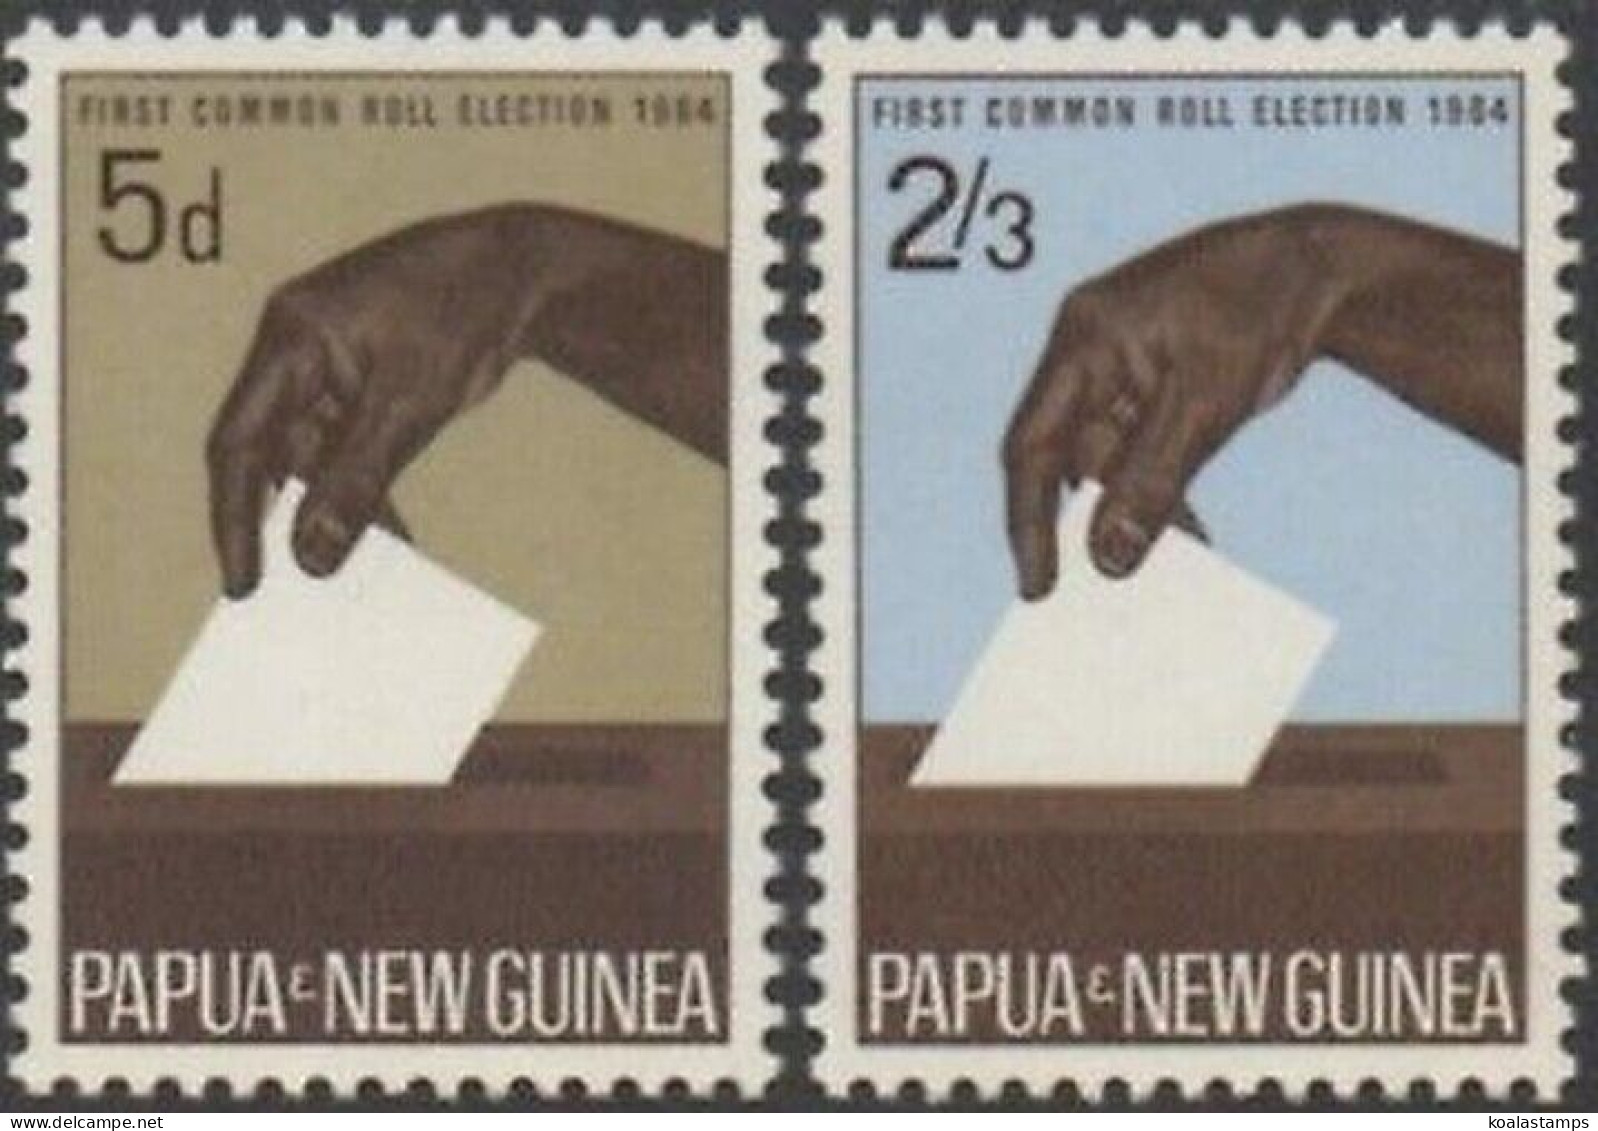 Papua New Guinea 1964 SG55-56 5d Casting Vote Set MNH - Papouasie-Nouvelle-Guinée